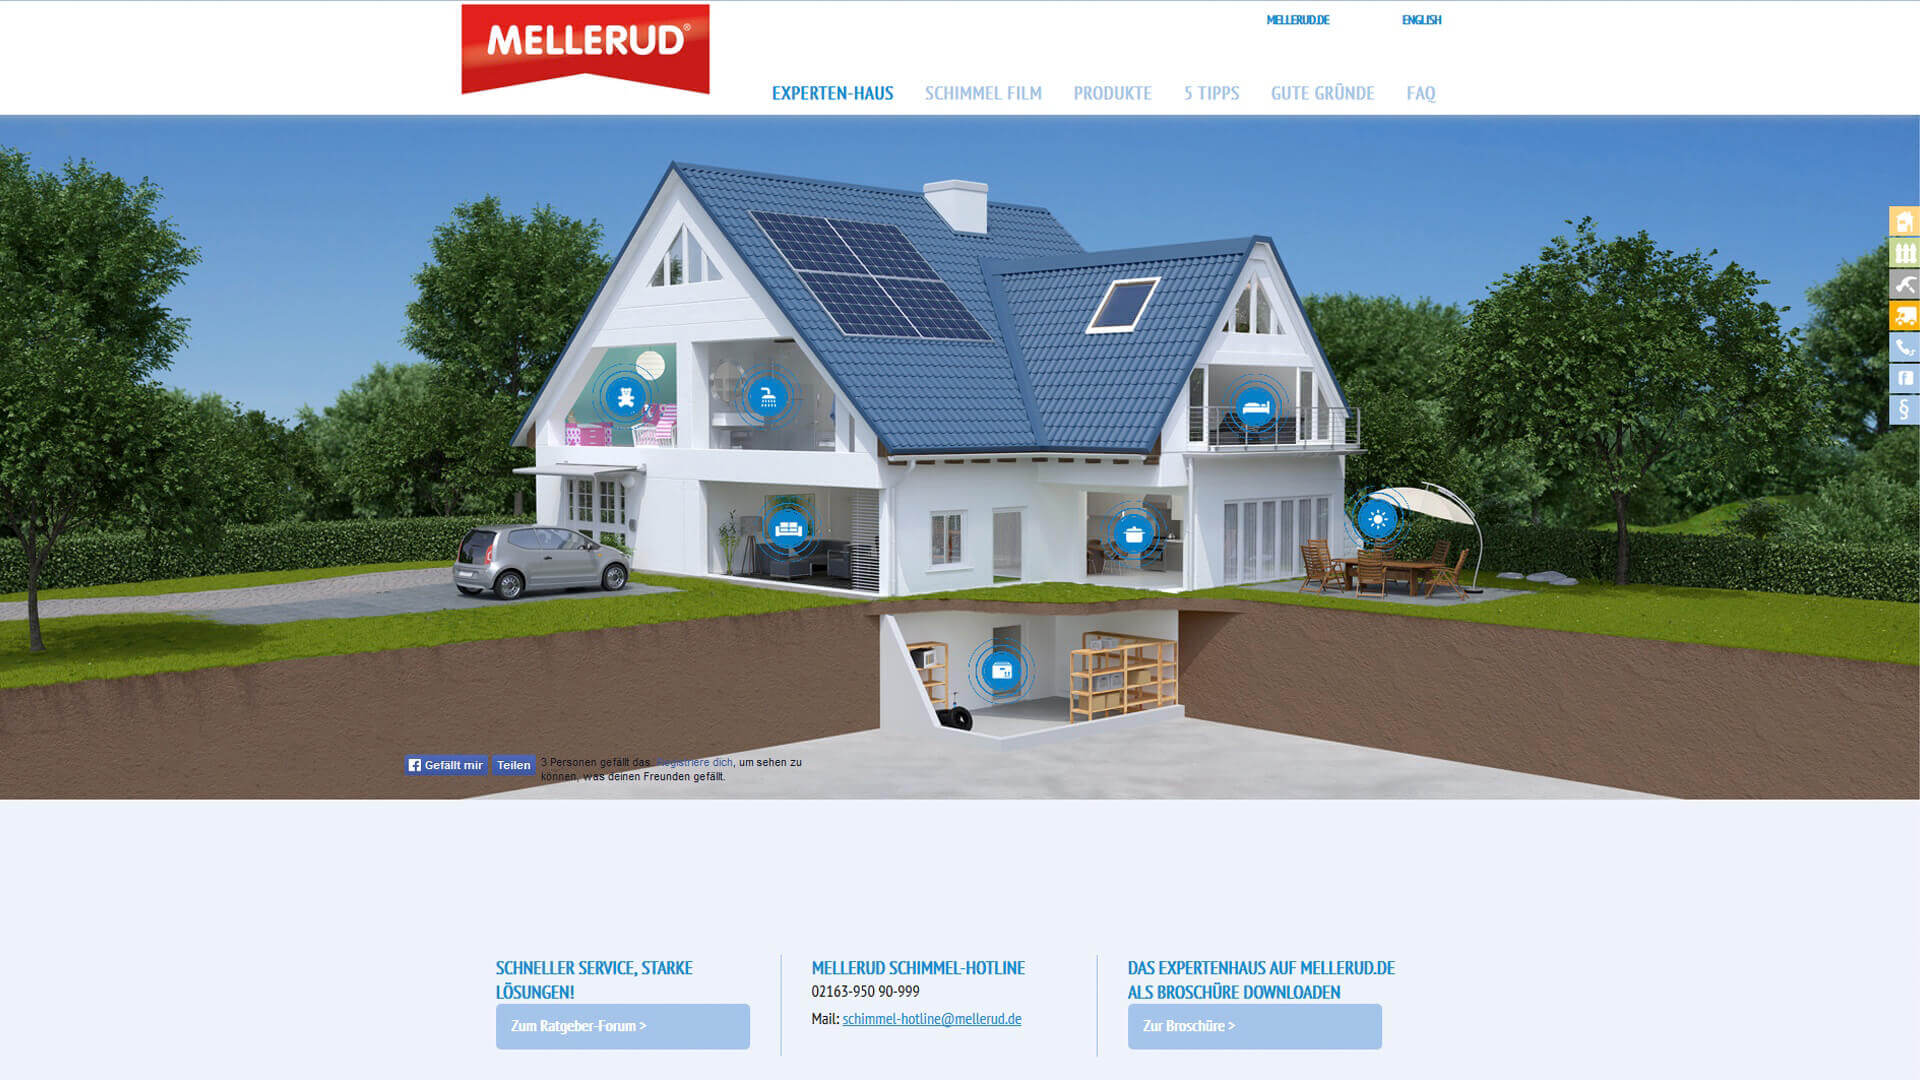 MELLERUD Microsite, Architekturvisualisierung eines Hauses